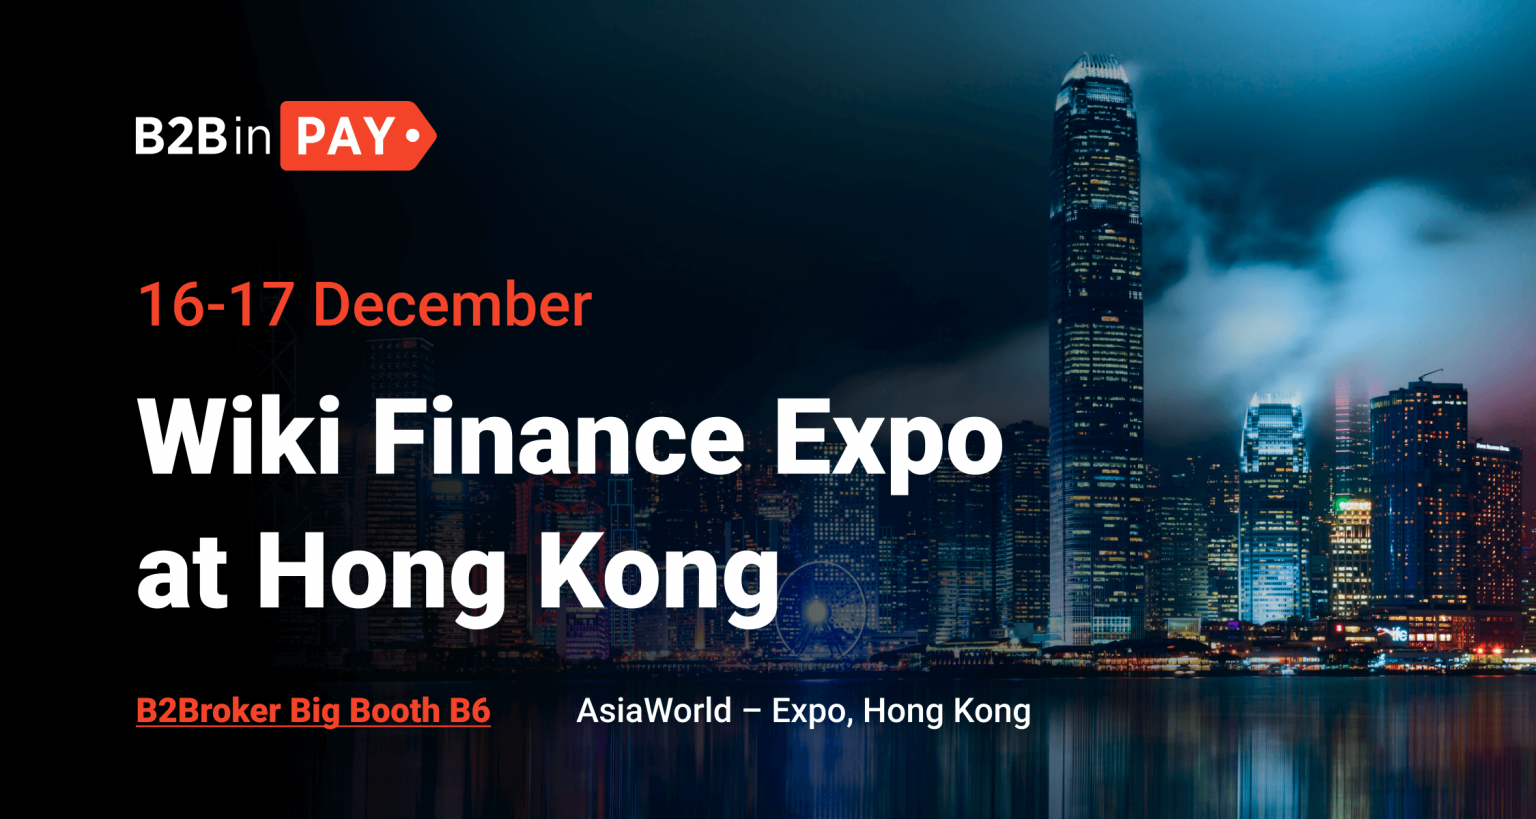 B2BinPay Confirms Participation at Wiki Finance Expo Hong Kong